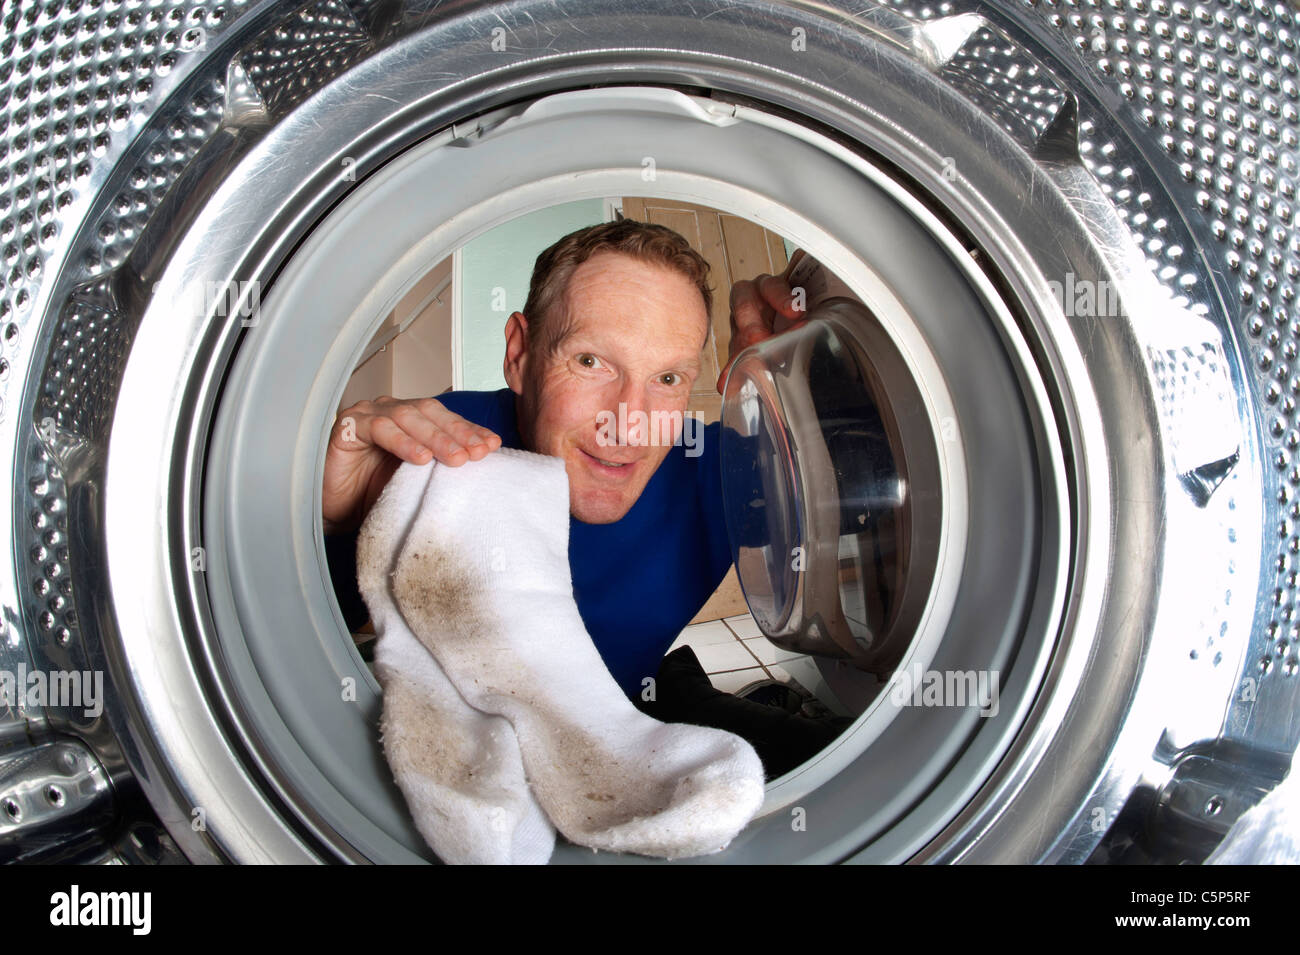 Mann, schmutzige Socken in die Waschmaschine Stockfotografie - Alamy